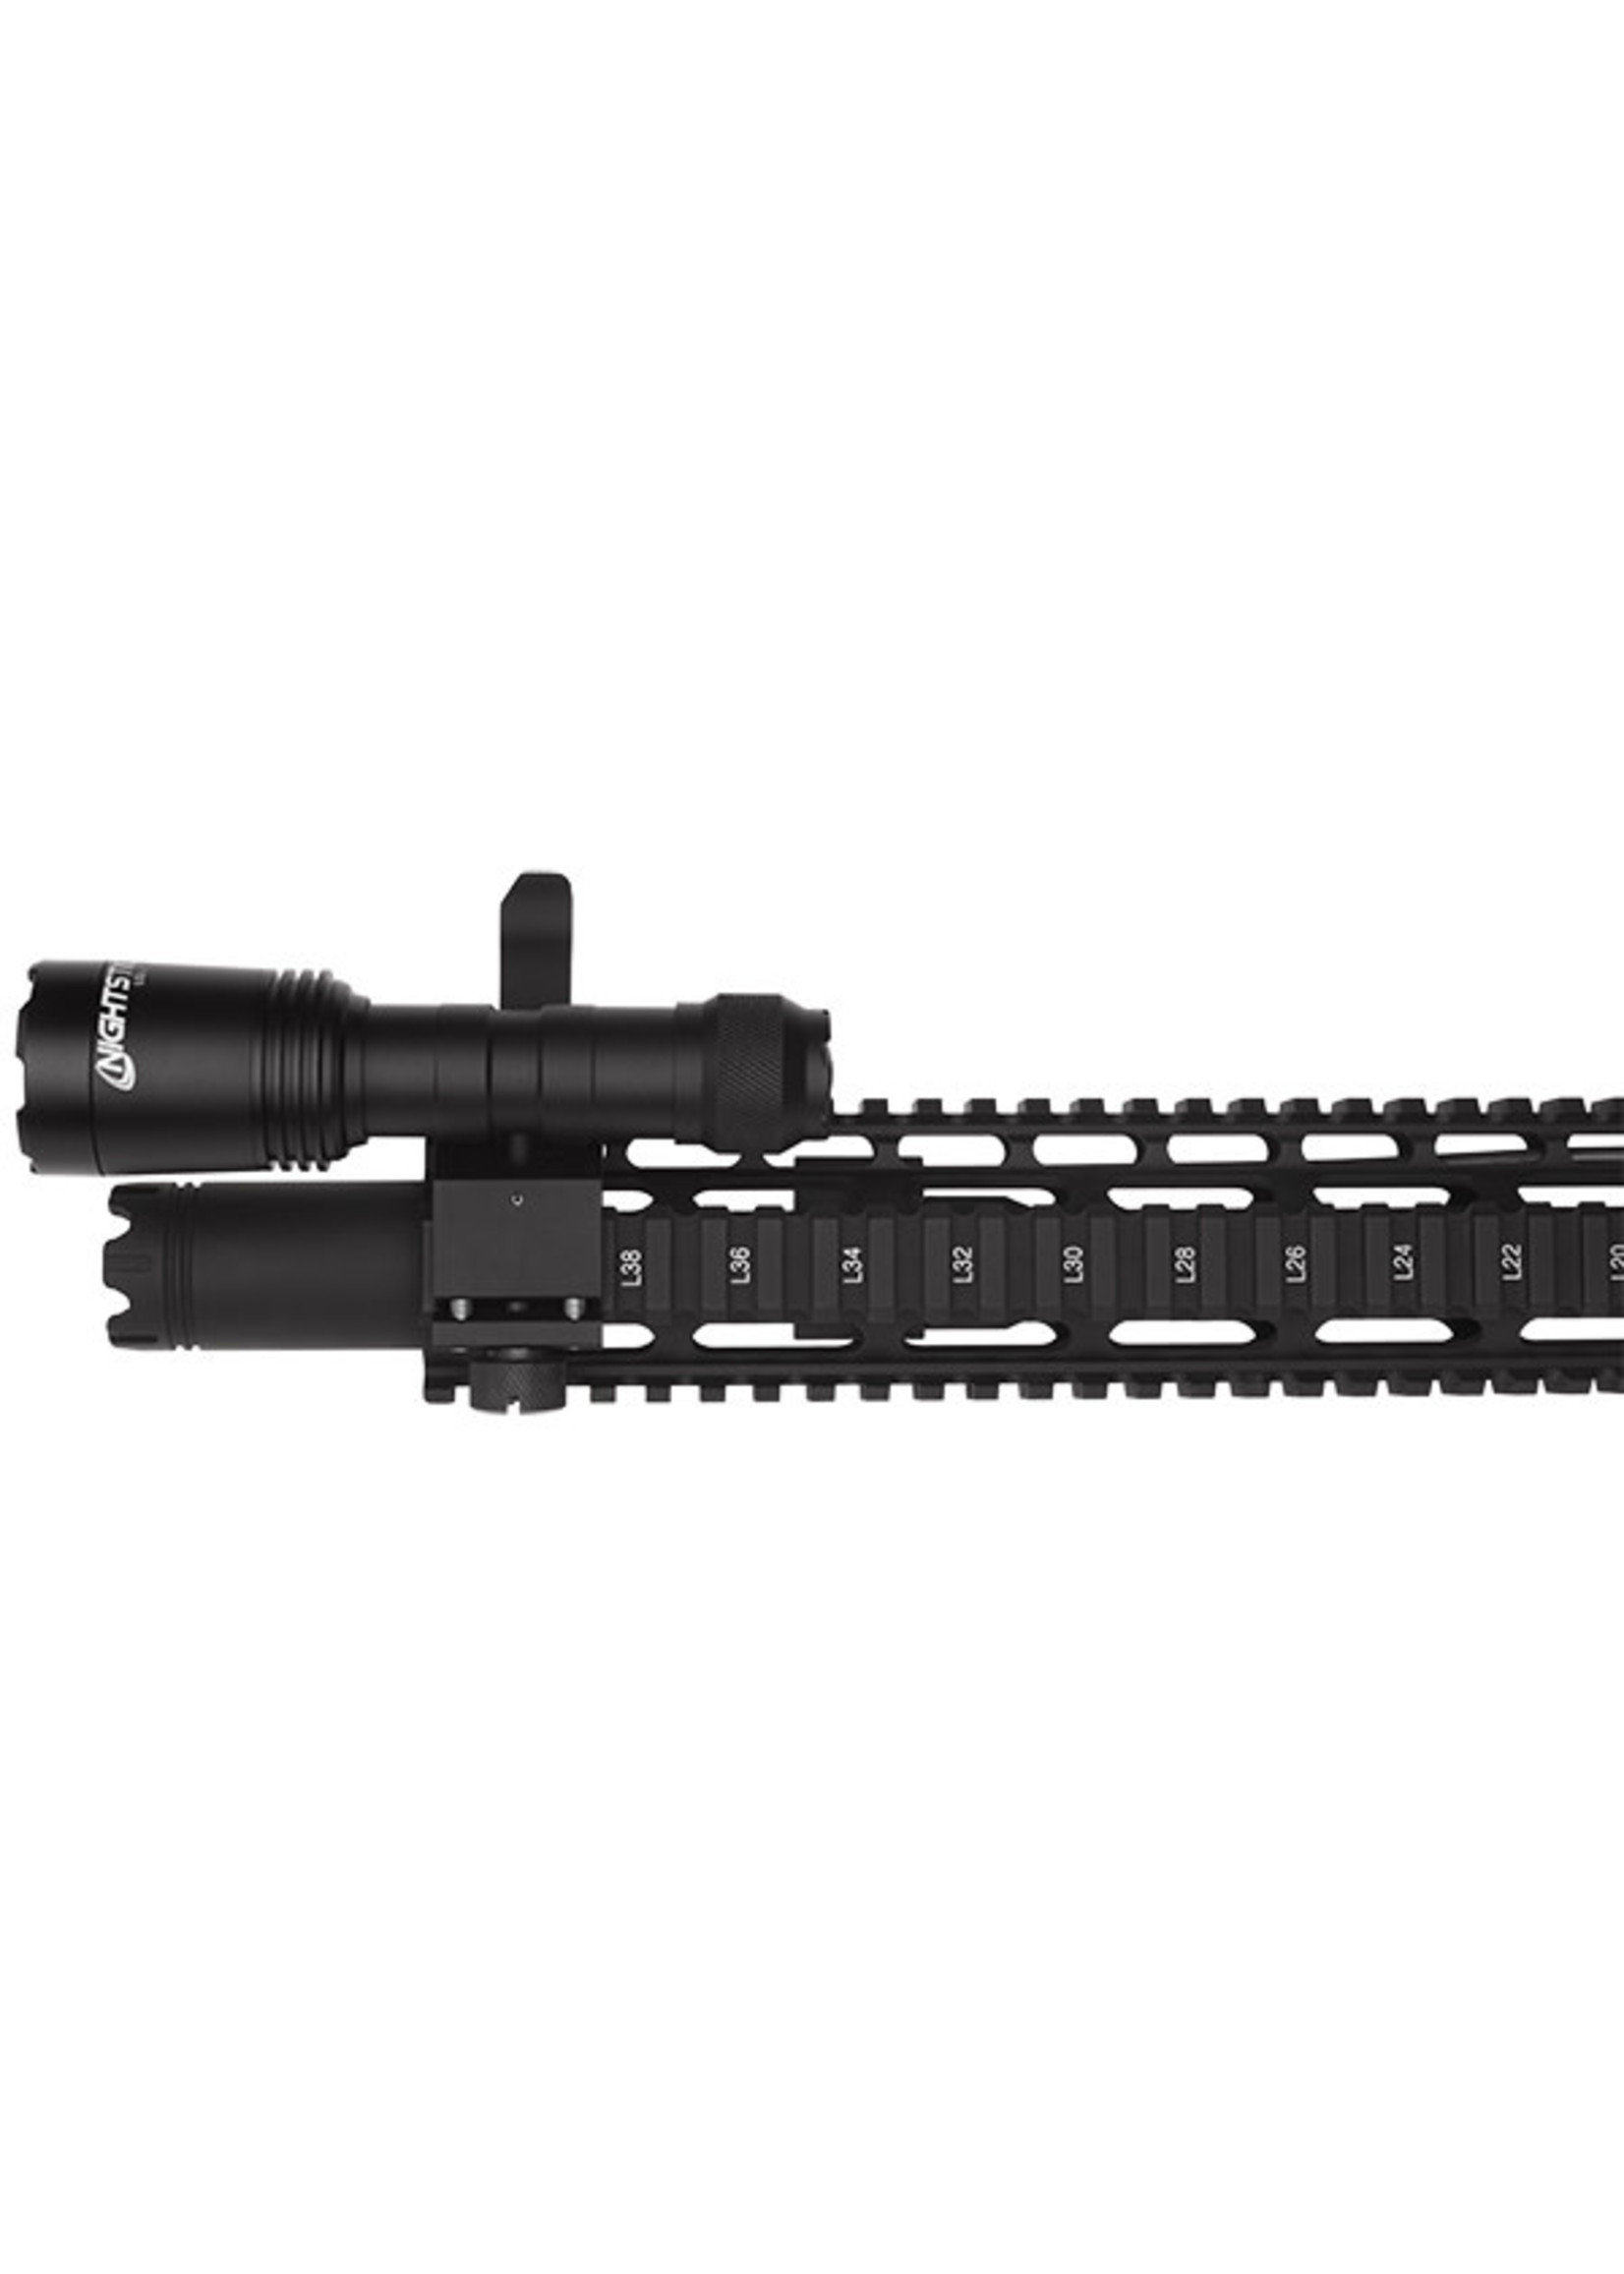 Nightstick LGL-170 Long Gun Light w/ Standard & Offset Picatinny Mounts - Rechargeable